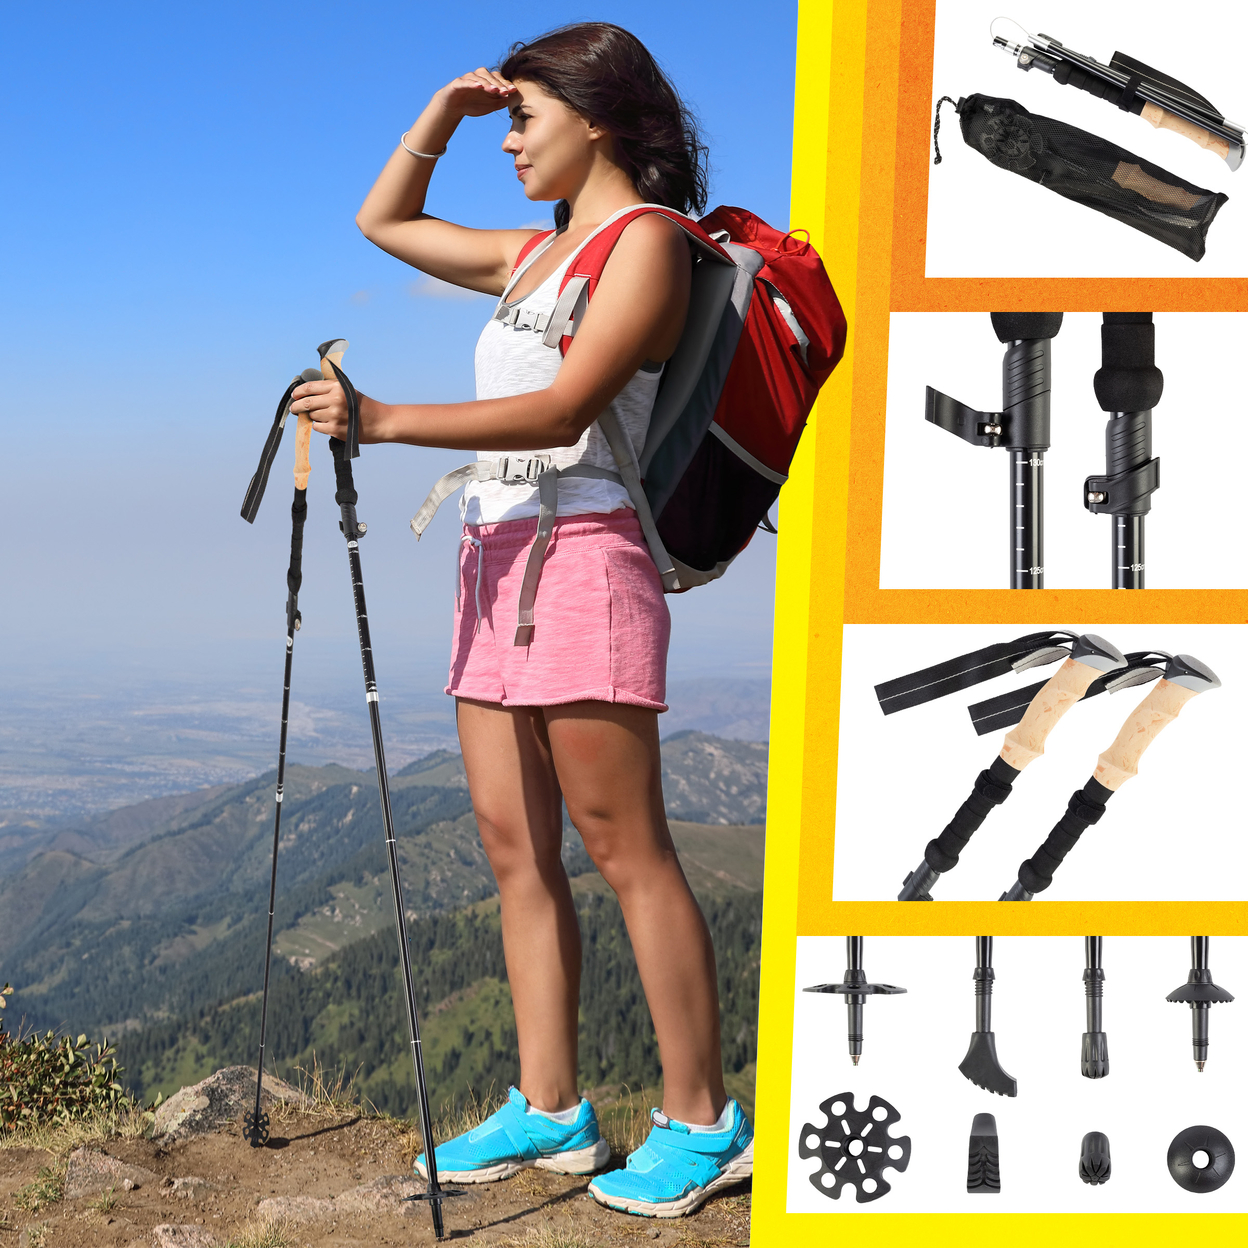 Collapsible Walking Sticks Set Of 2 Foldable Trekking Poles Hiking Gear, Black